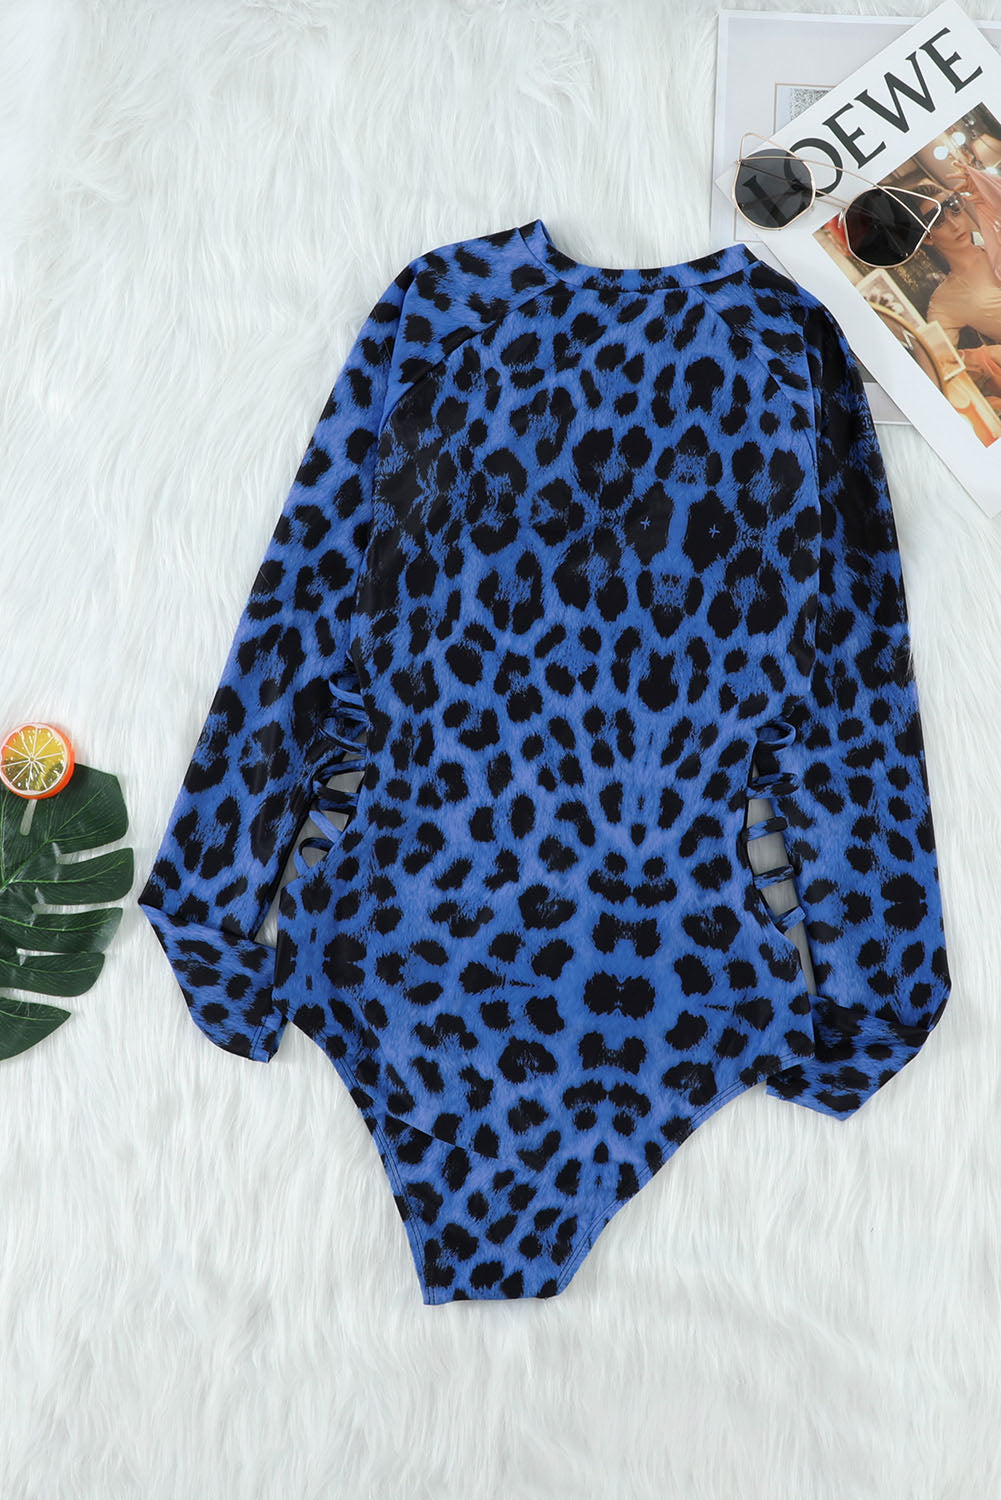 Blue Leopard Print Zipper Cut-out Rash Guard Swimsuit Rash Guards JT's Designer Fashion